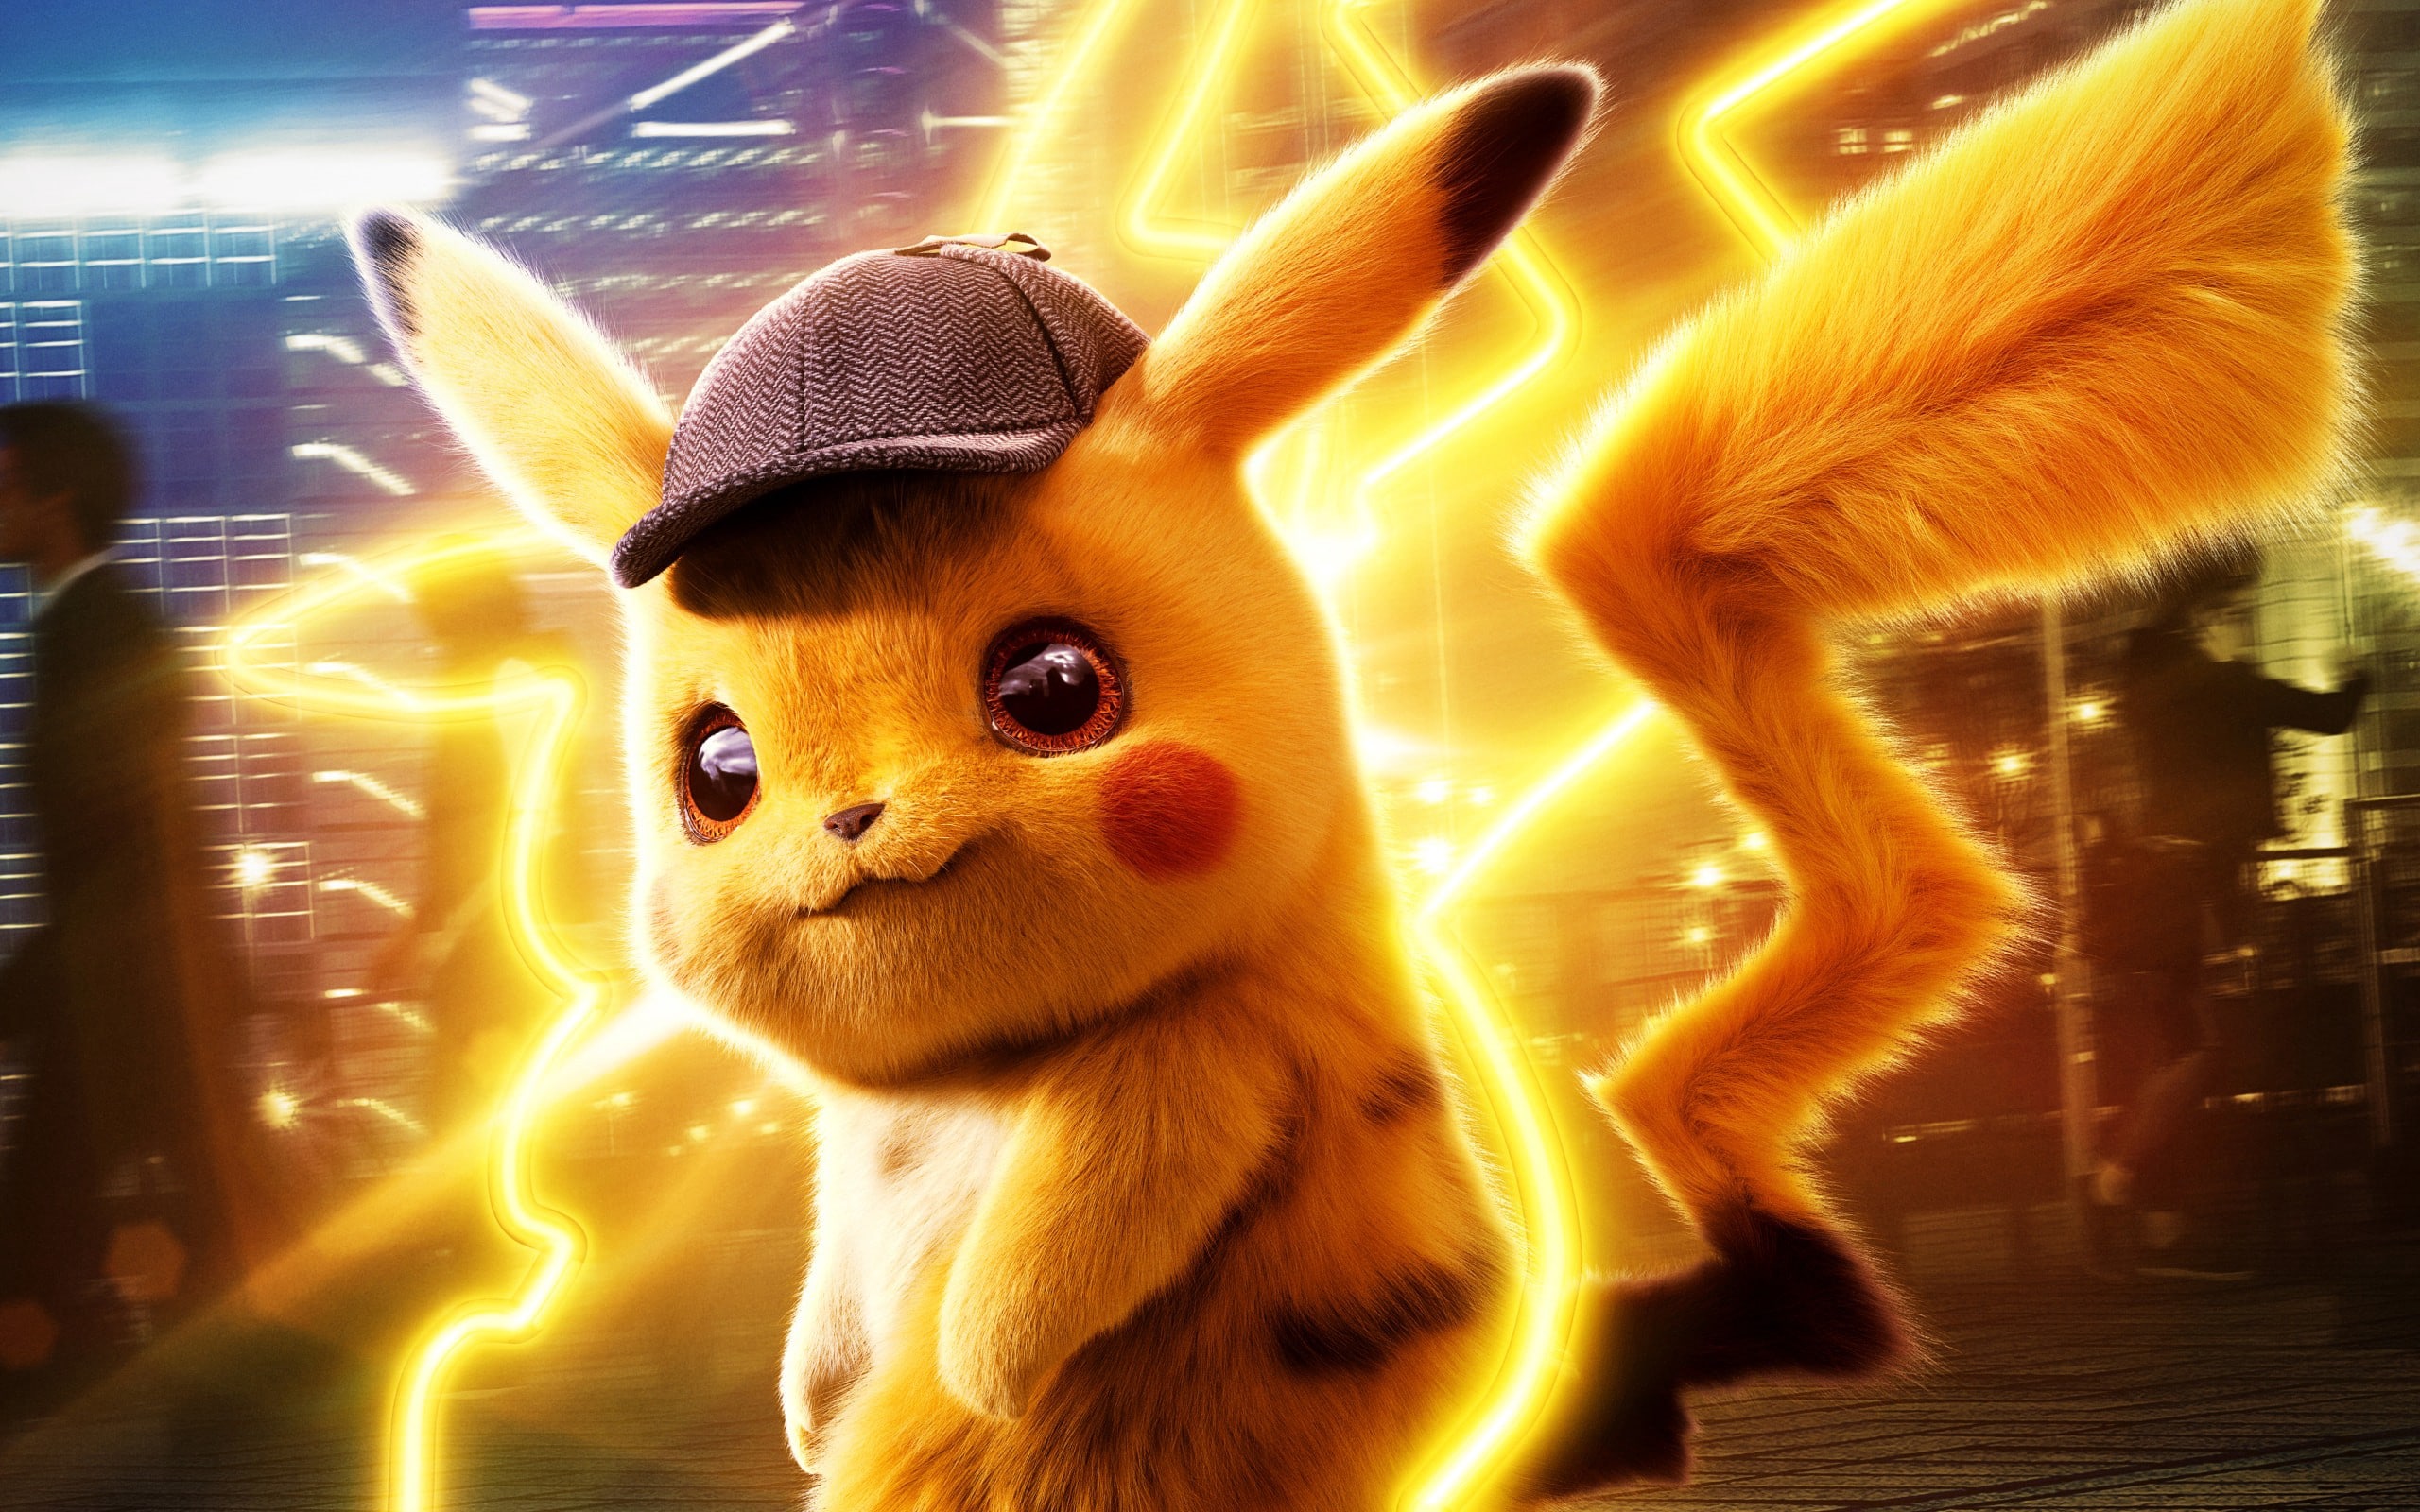 Nädala parim film: ostke 9,90 R $ eest teiste tiitlite hulgast muu hulgas Ryan Reynoldsiga film "Pokémon: Detective Pikachu"